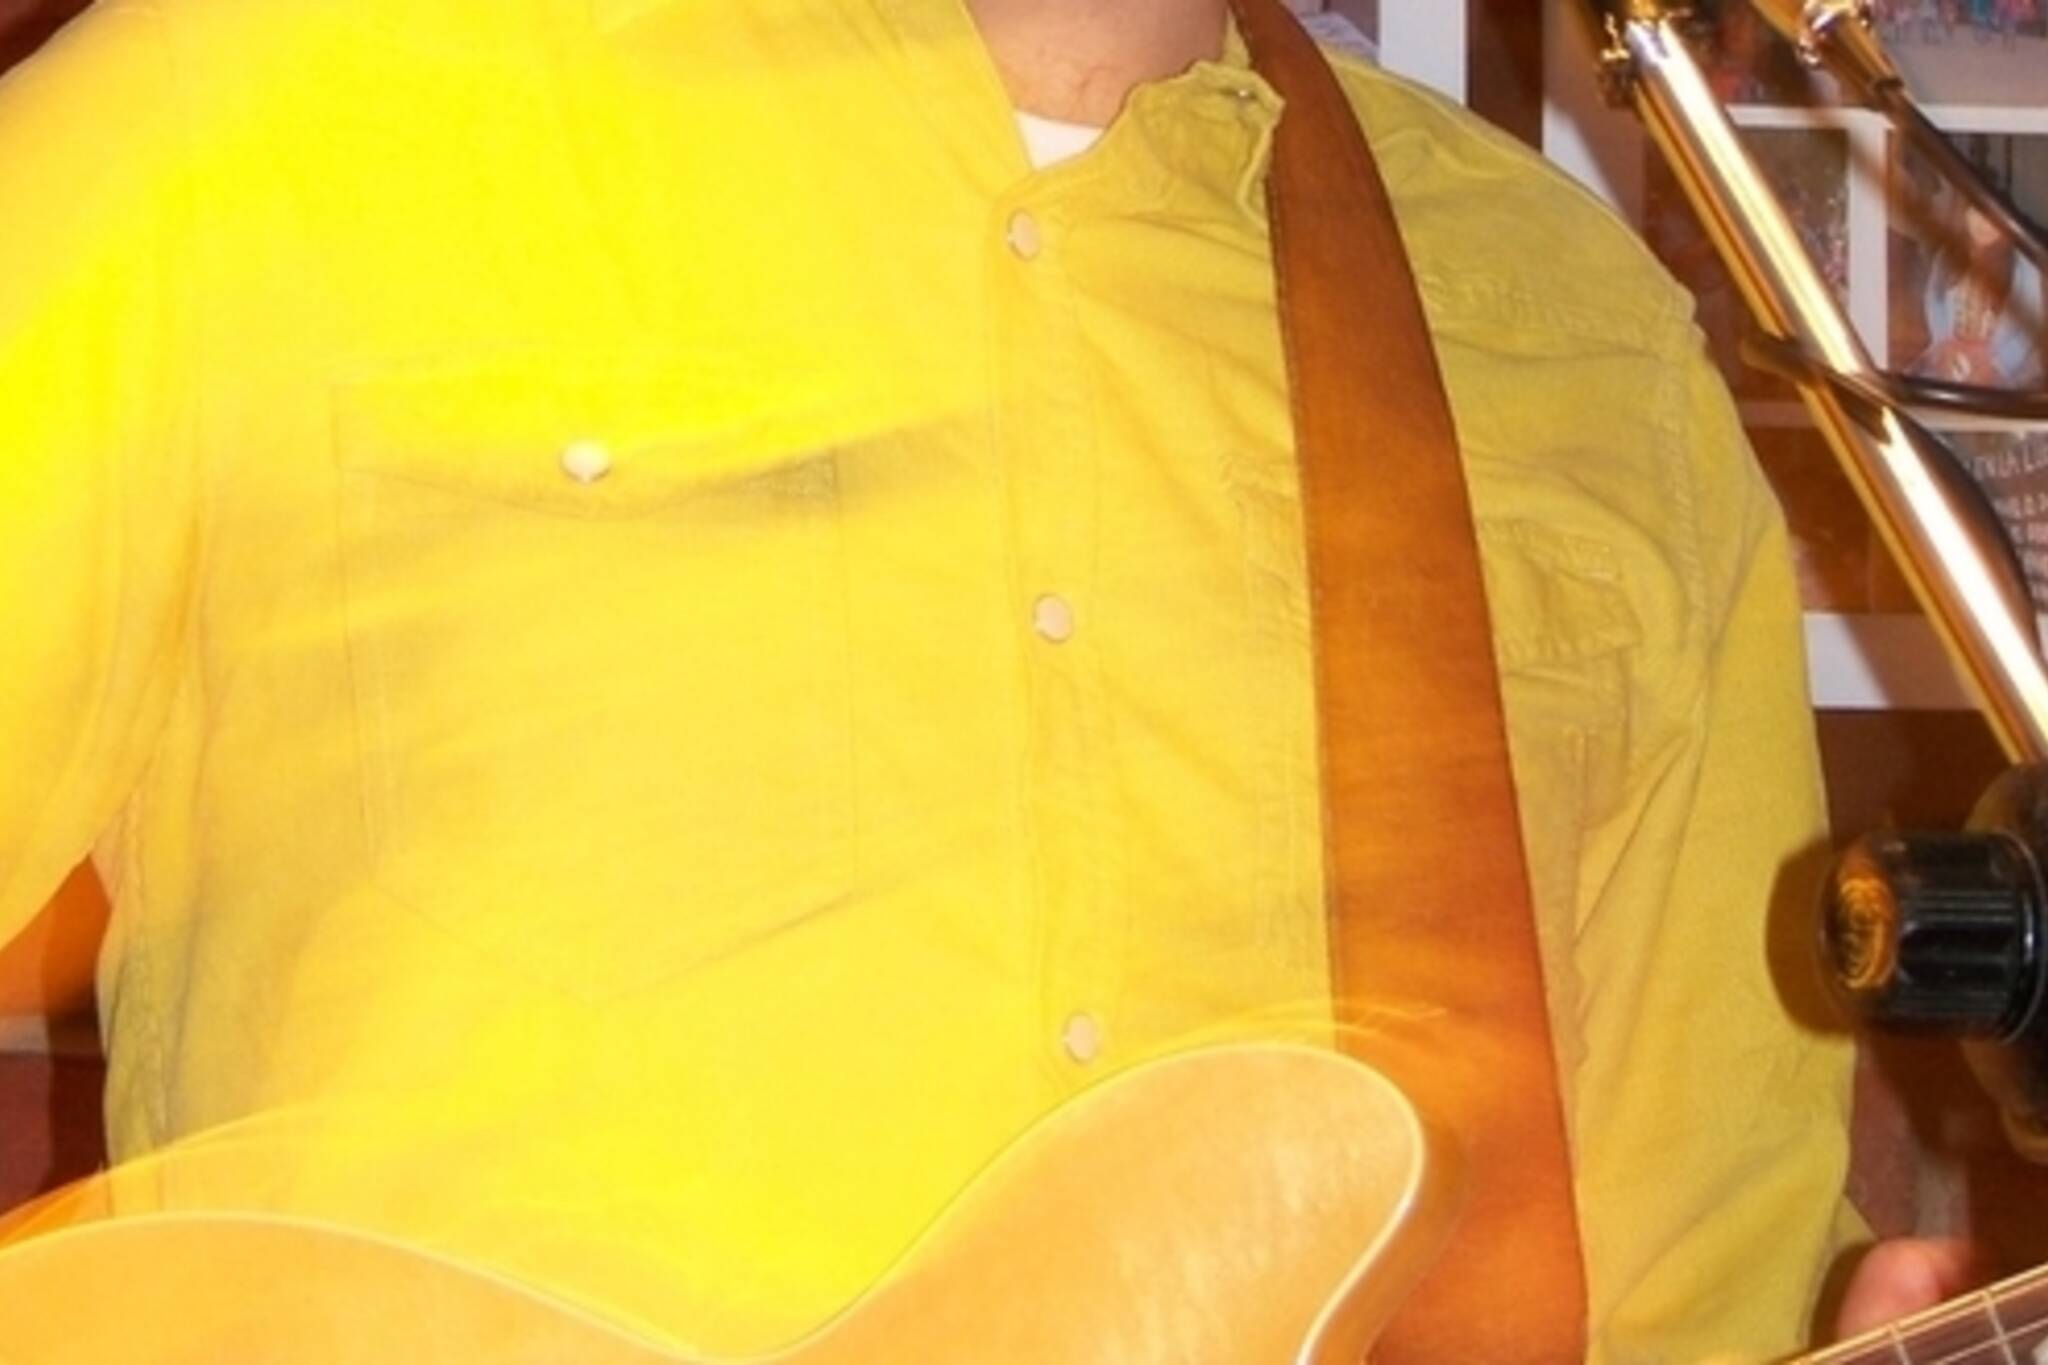 Brian had a really bright shirt